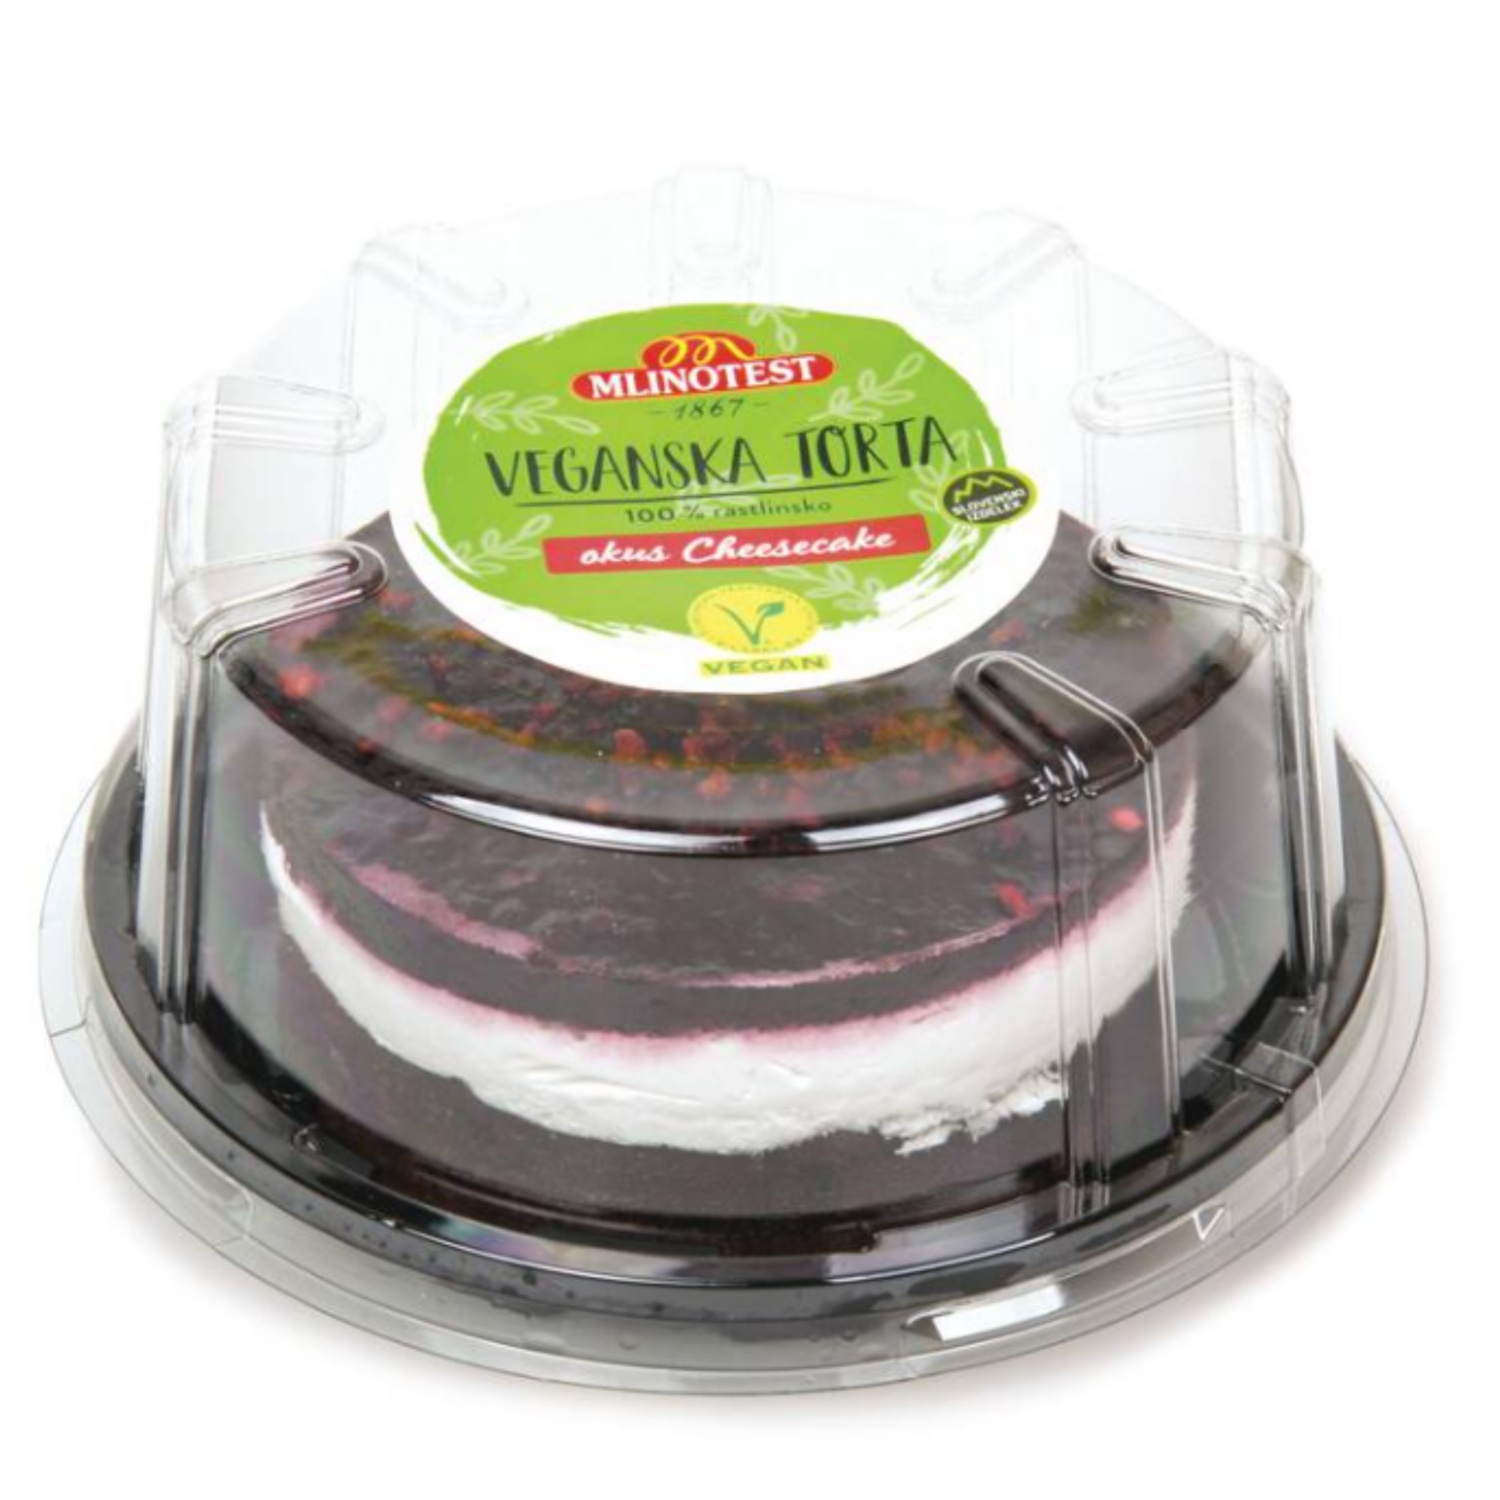 Veganska torta, cheesecake